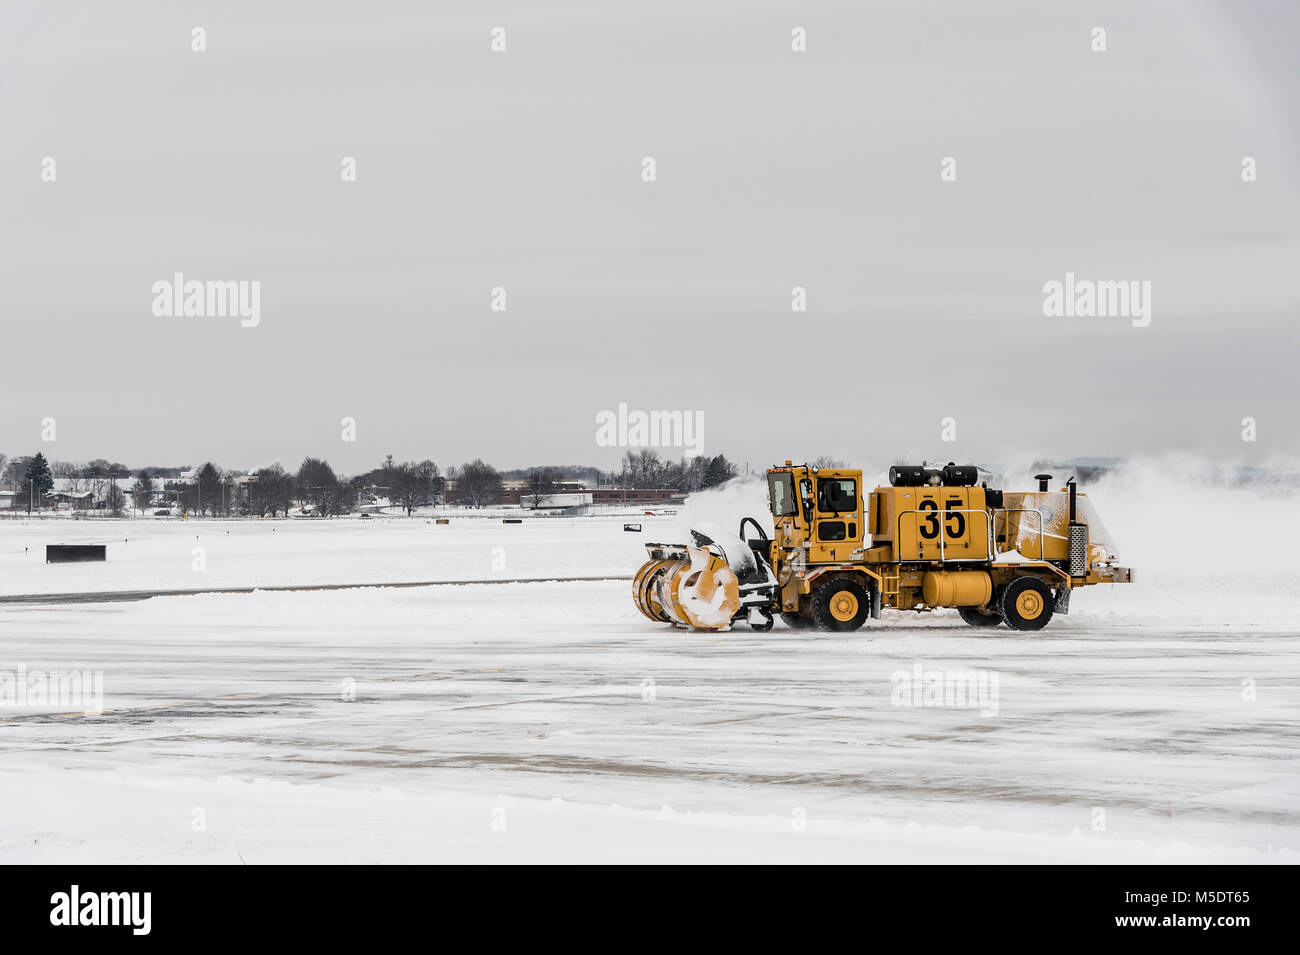 Petit aéroport régional de chasse-neige en hiver, New York, USA Banque D'Images